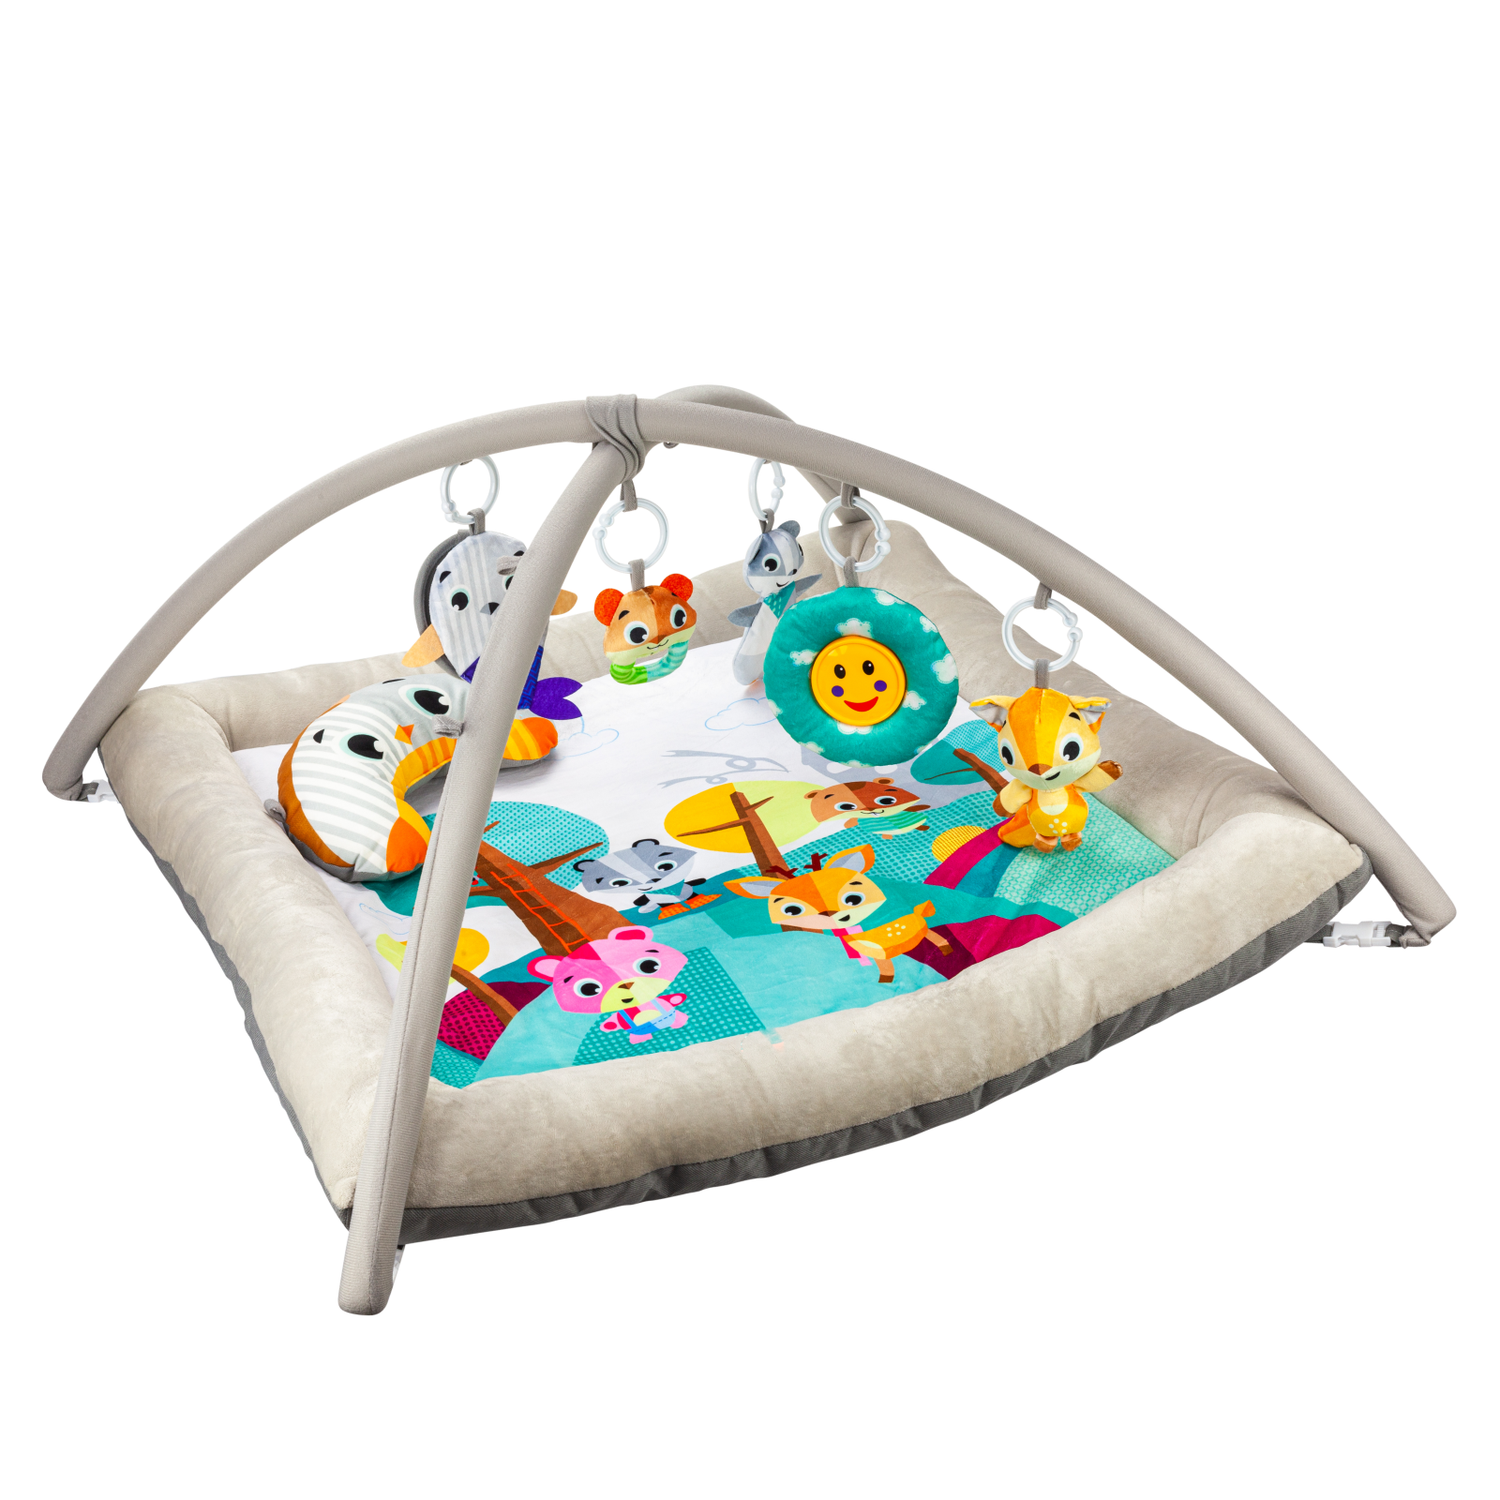 Развивающий игровой коврик Solmax для новорожденных с дугой и игрушками бежевый/голубой - фото 5